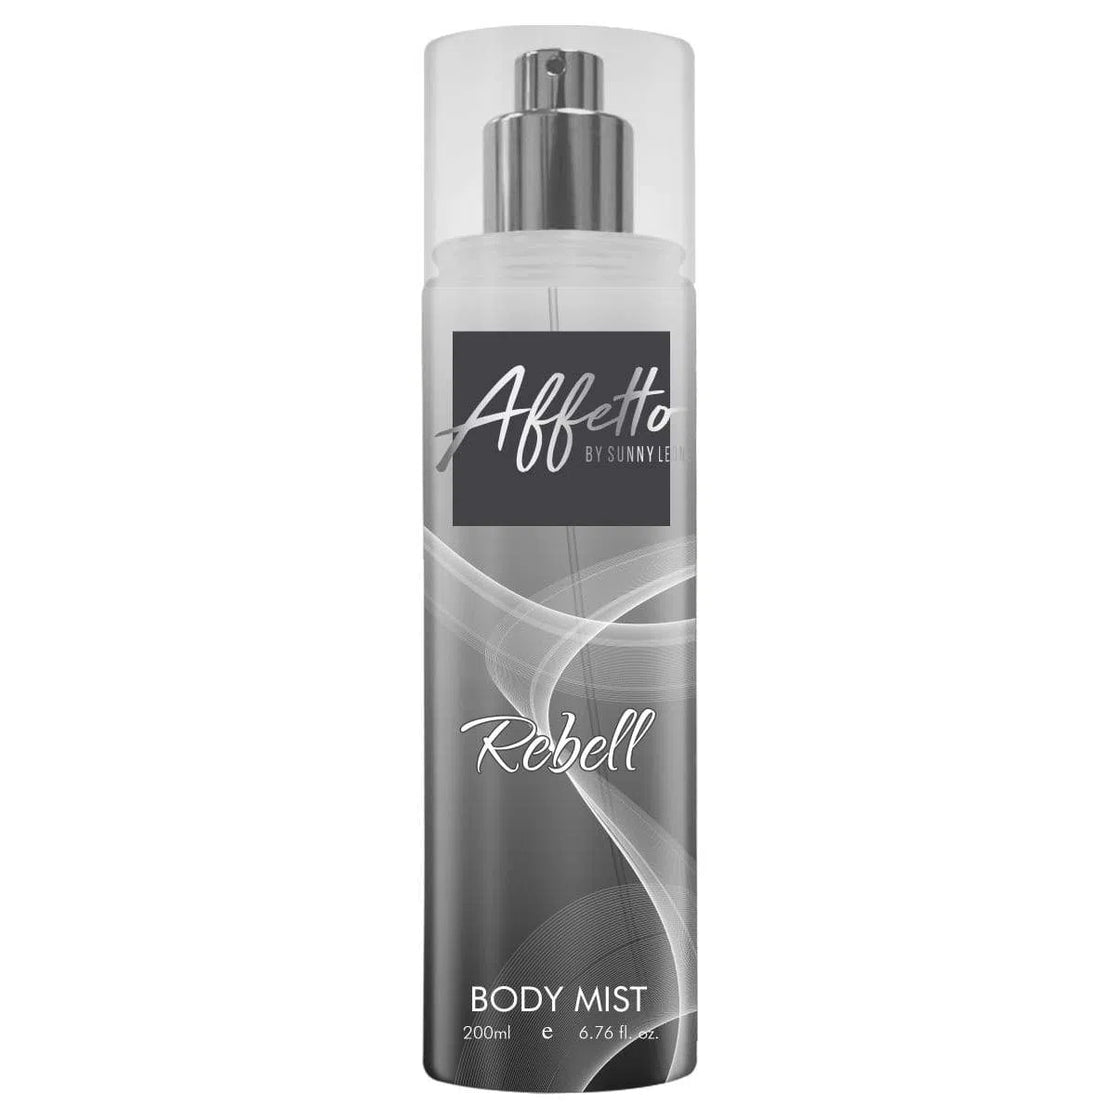 Rebell for Men - Affetto by Sunny Leone Body Mist - 200ml-Body Mist-cruelty free cosmetics-Sunny Leone